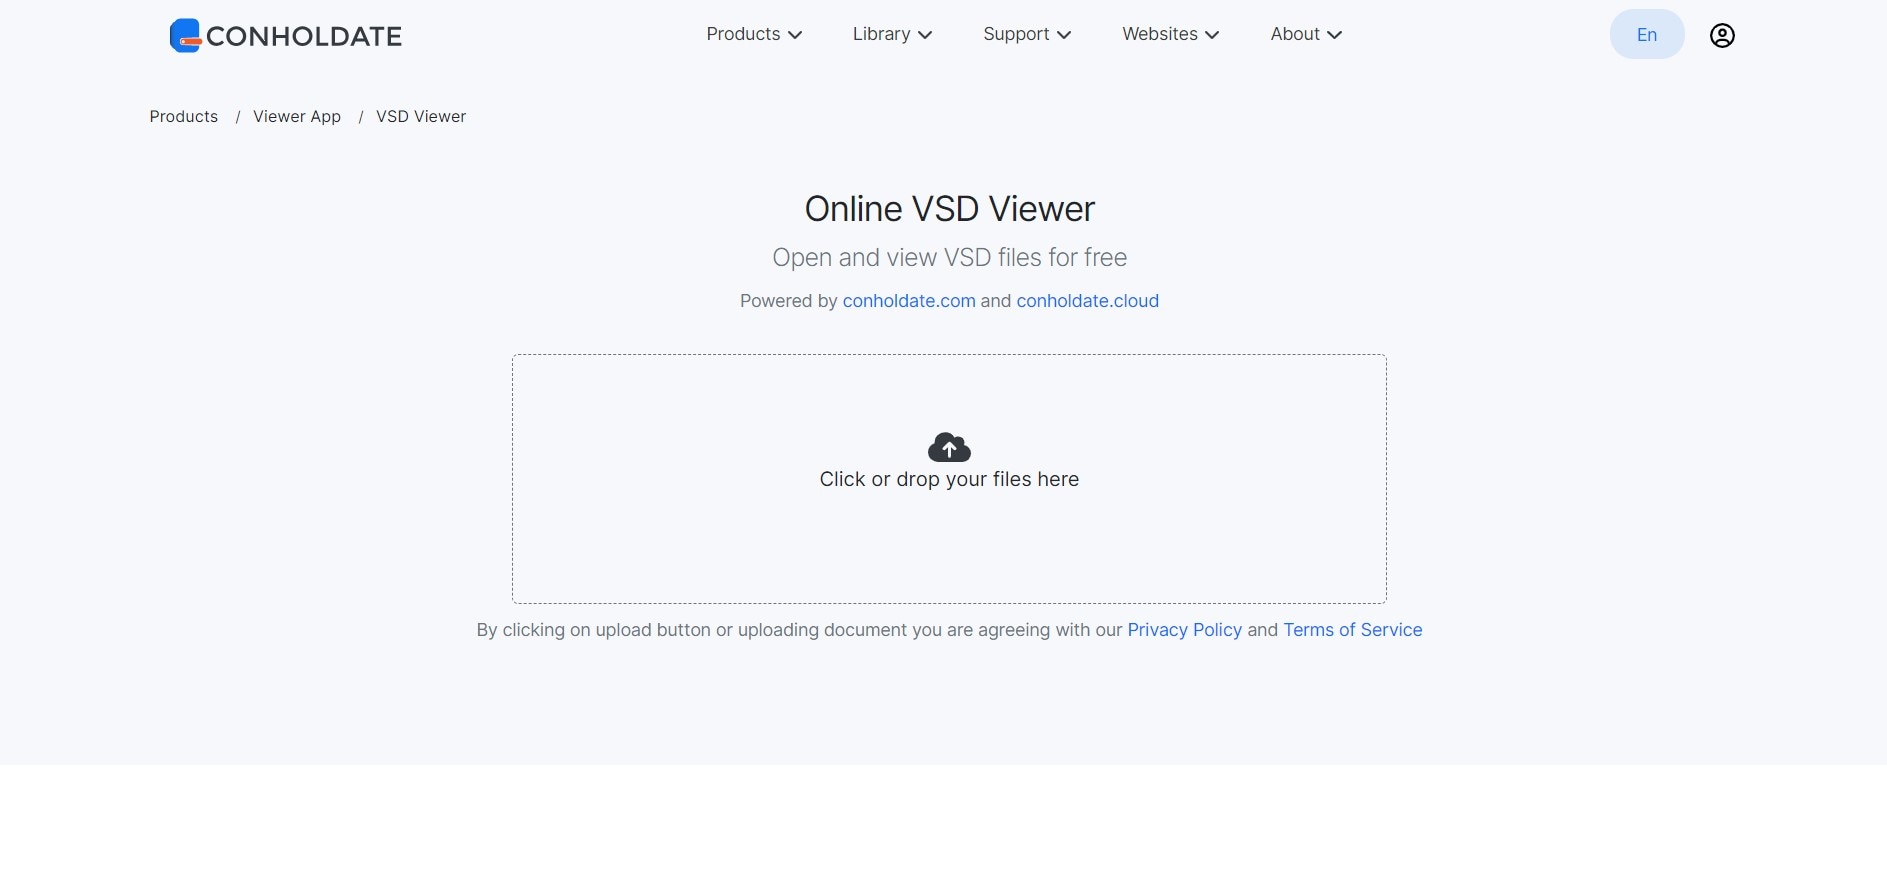 conholdate gratuit interface de visualisation visio en ligne